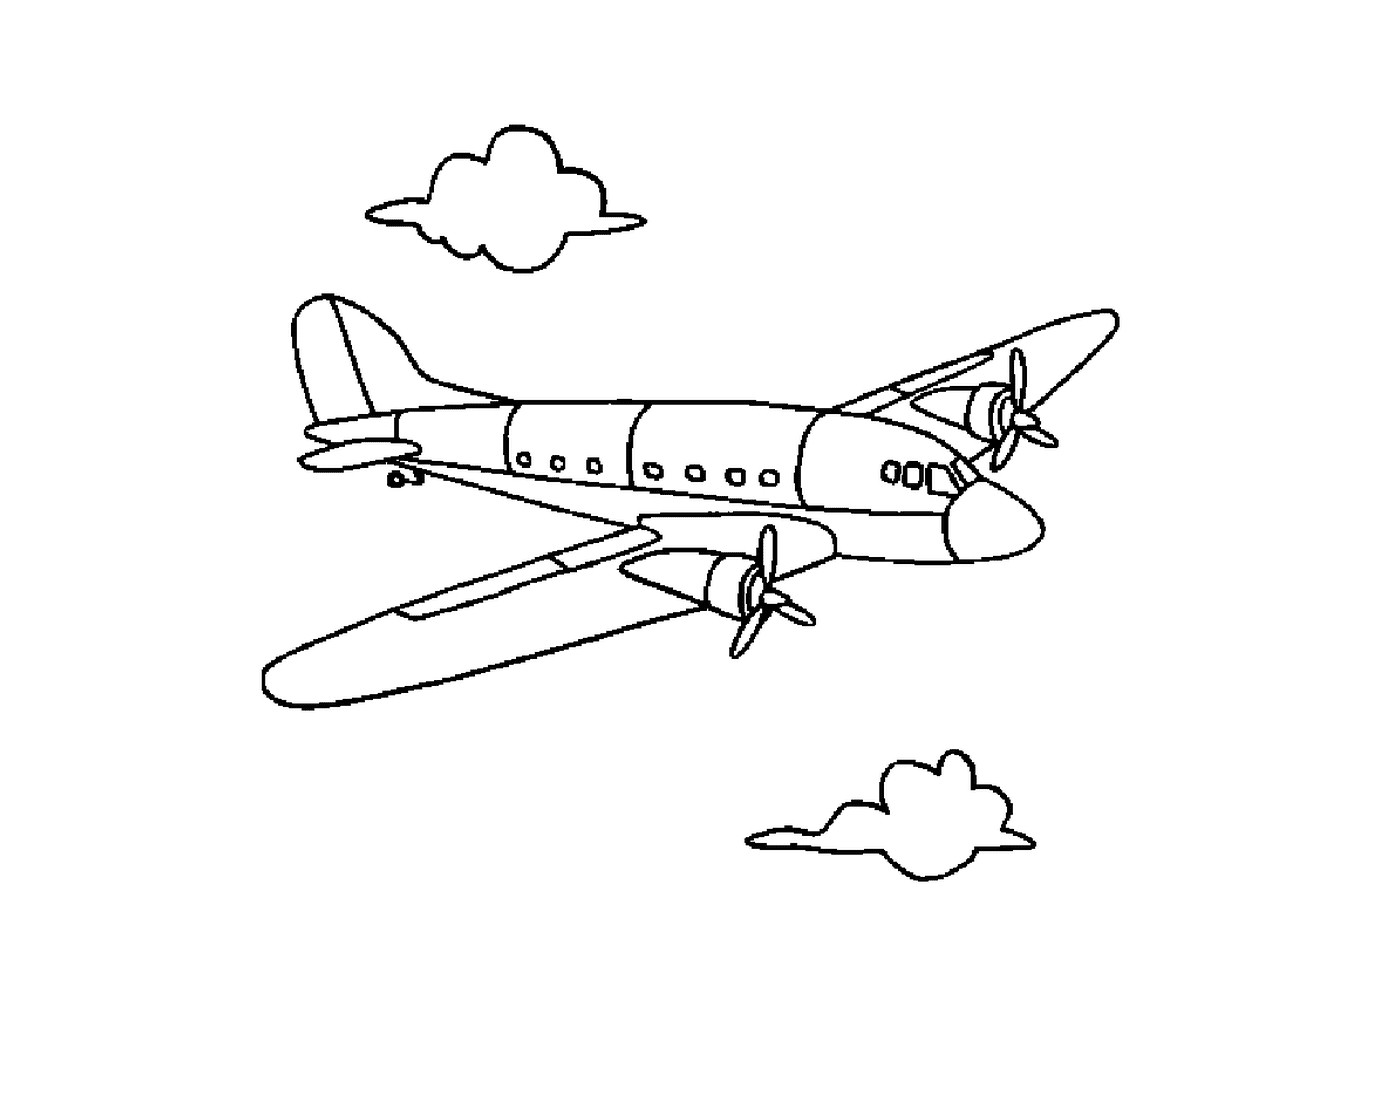   Un avion vole dans le ciel avec des nuages 